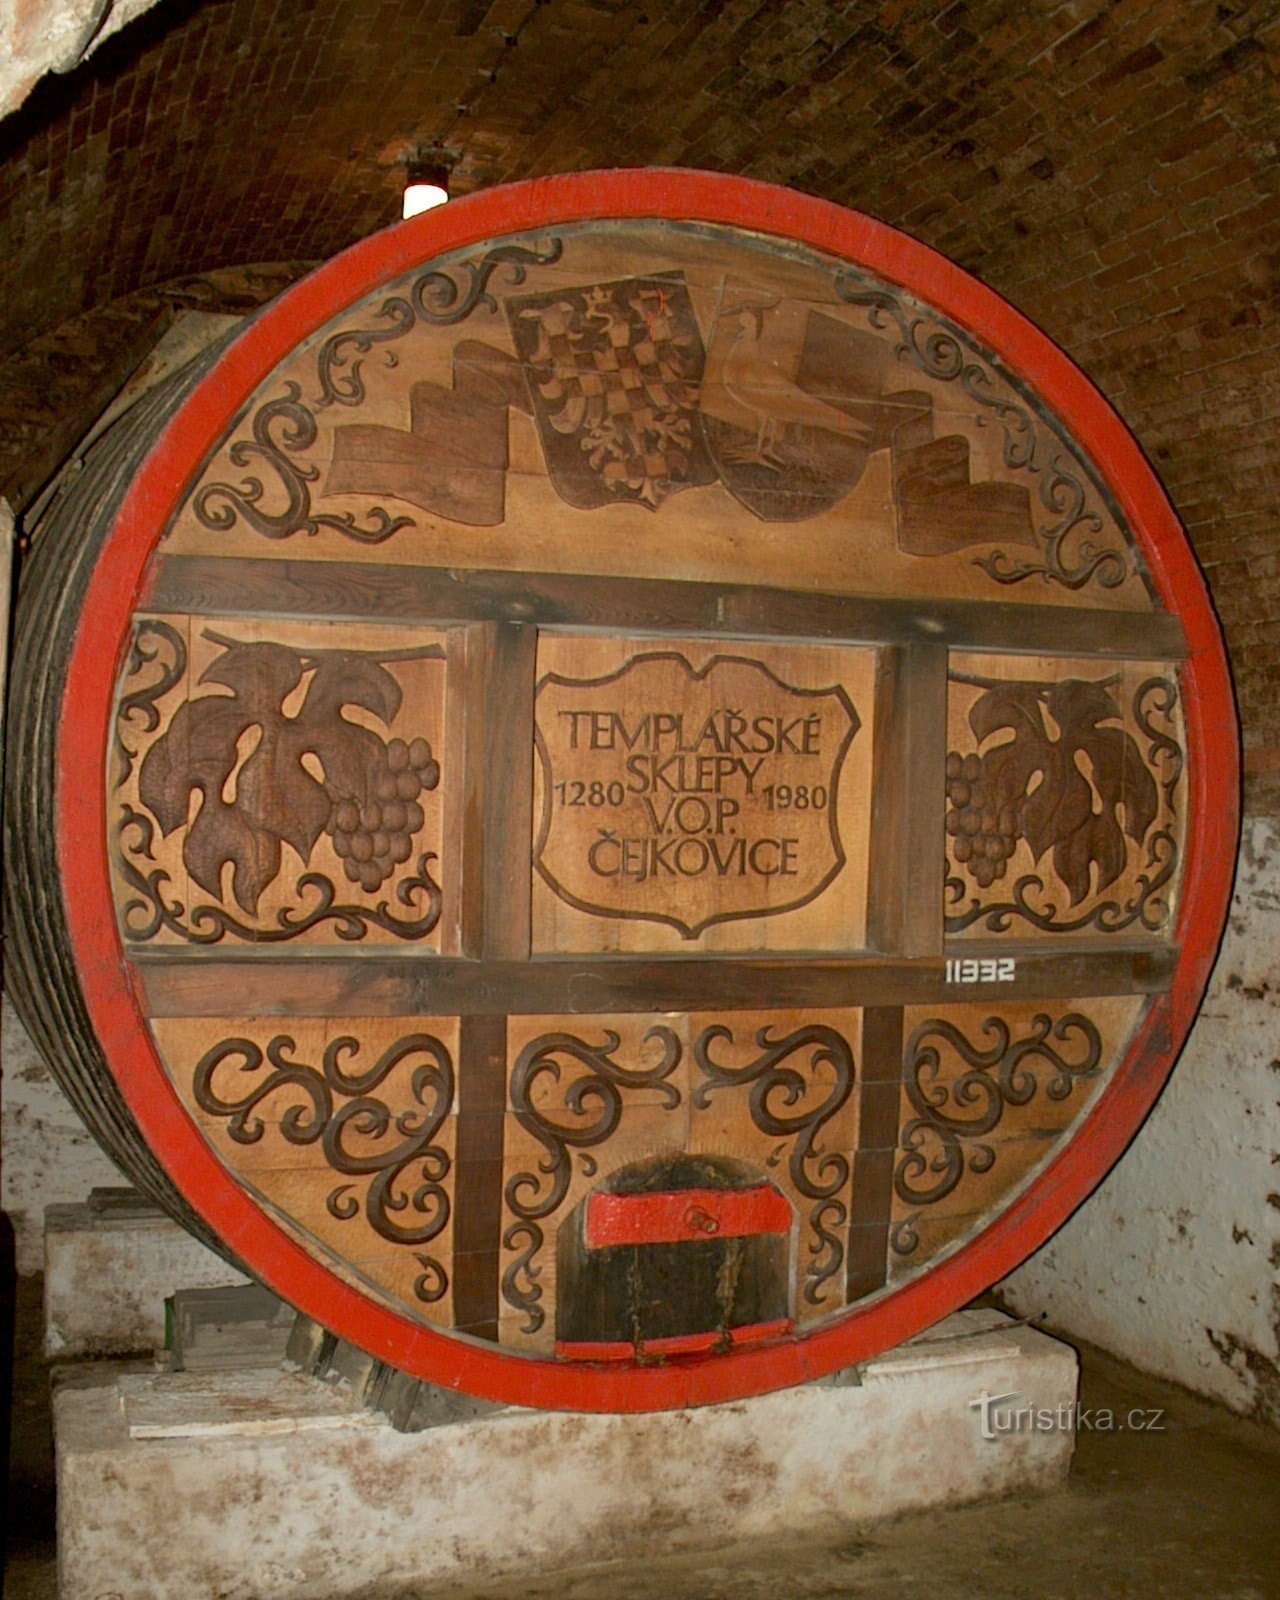 barril grande, foto © Čejkovice cellars